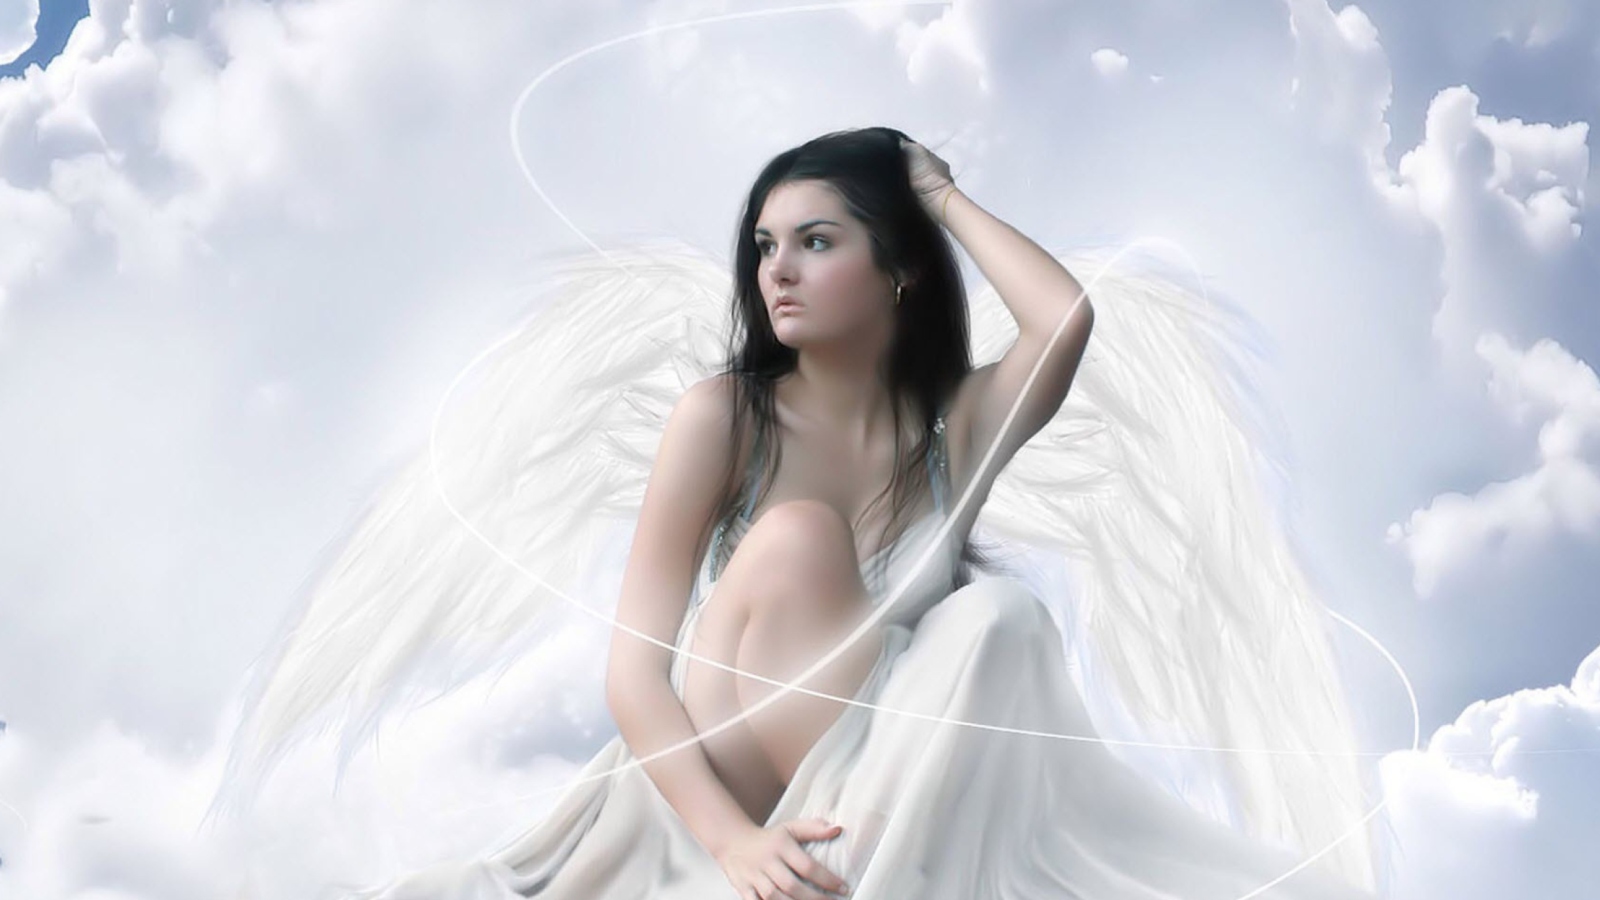 Das Angel Girl Wallpaper 1600x900